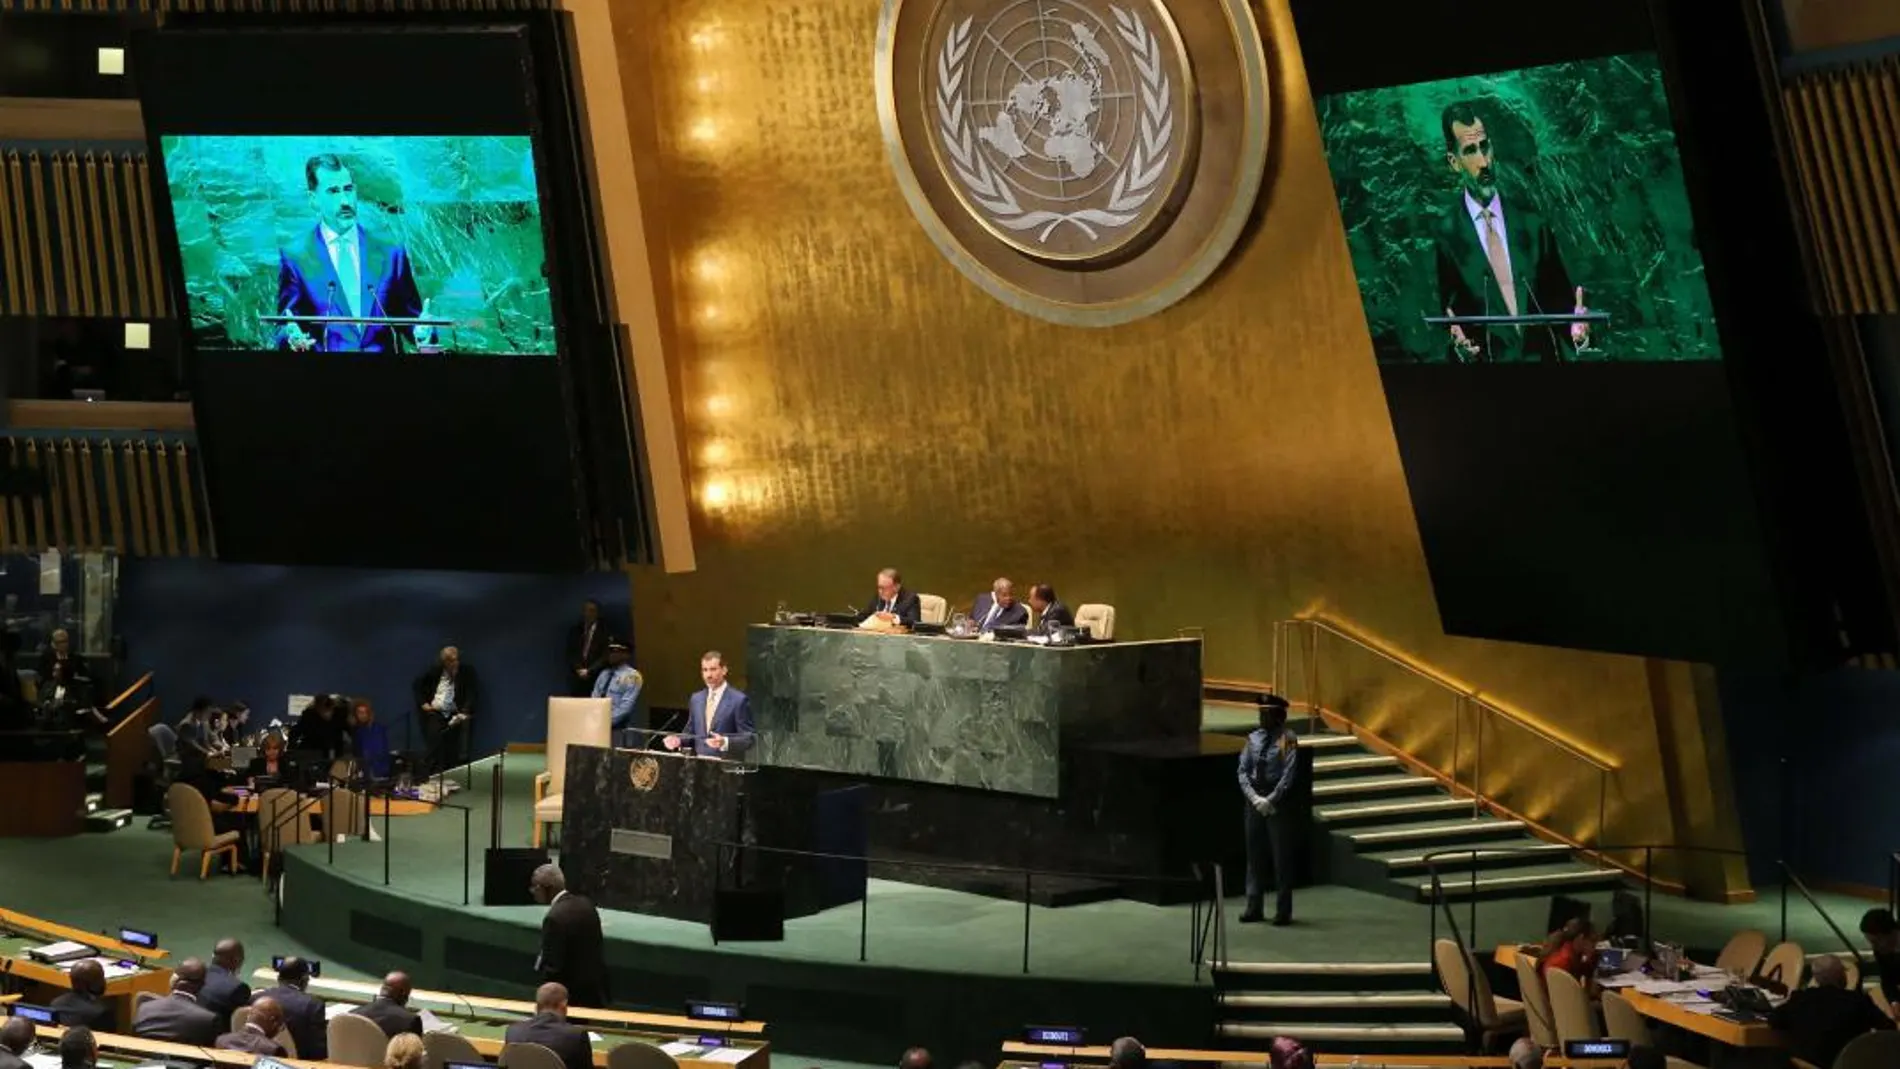 Felipe VI interviene ante la Asamblea General de las Naciones Unidas en 2014. EFE/Ballesteros